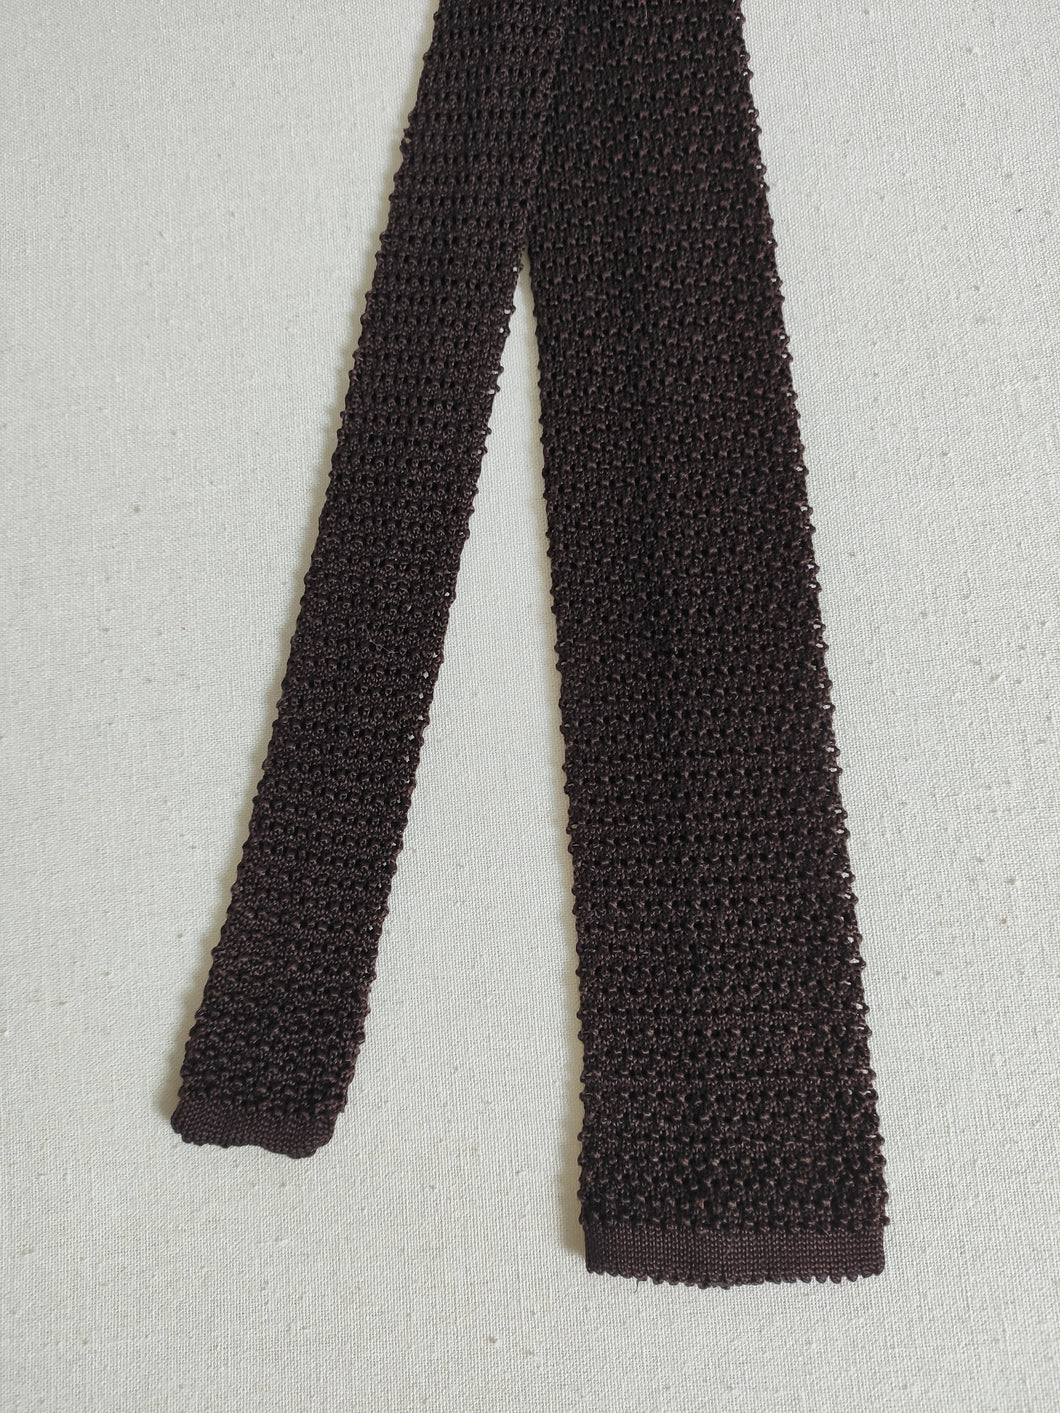 Cravate marron vintage en tricot de soie